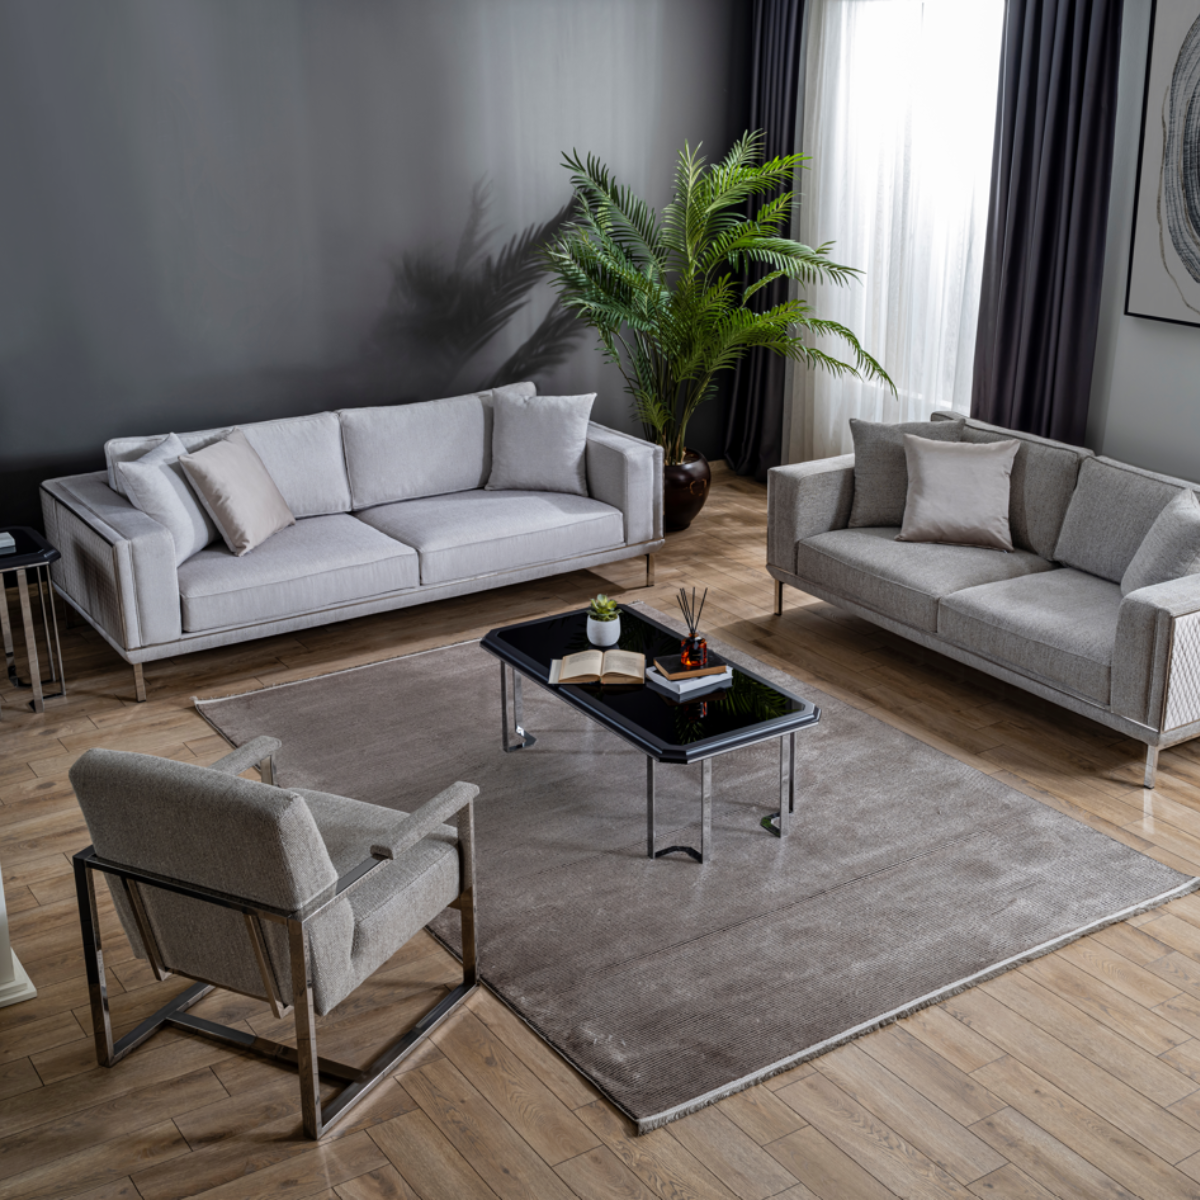 Canapea Modernă Cu 3 Locuri De Lux, Balance